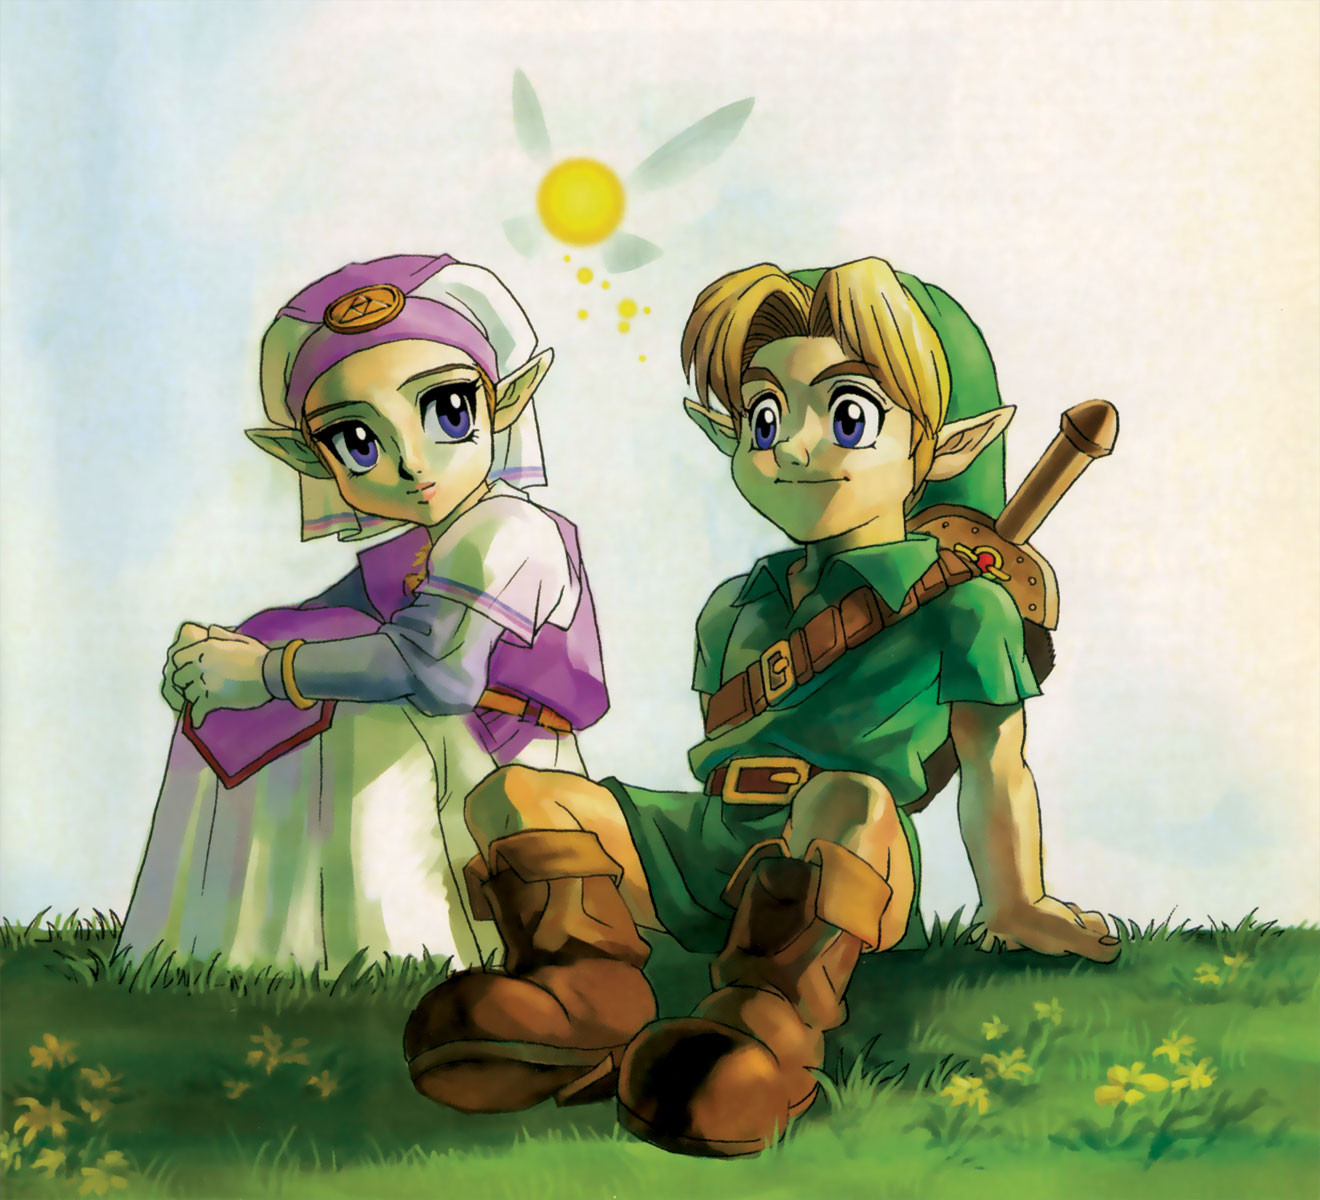 Zelda Universe - The Legend of Zelda fan community